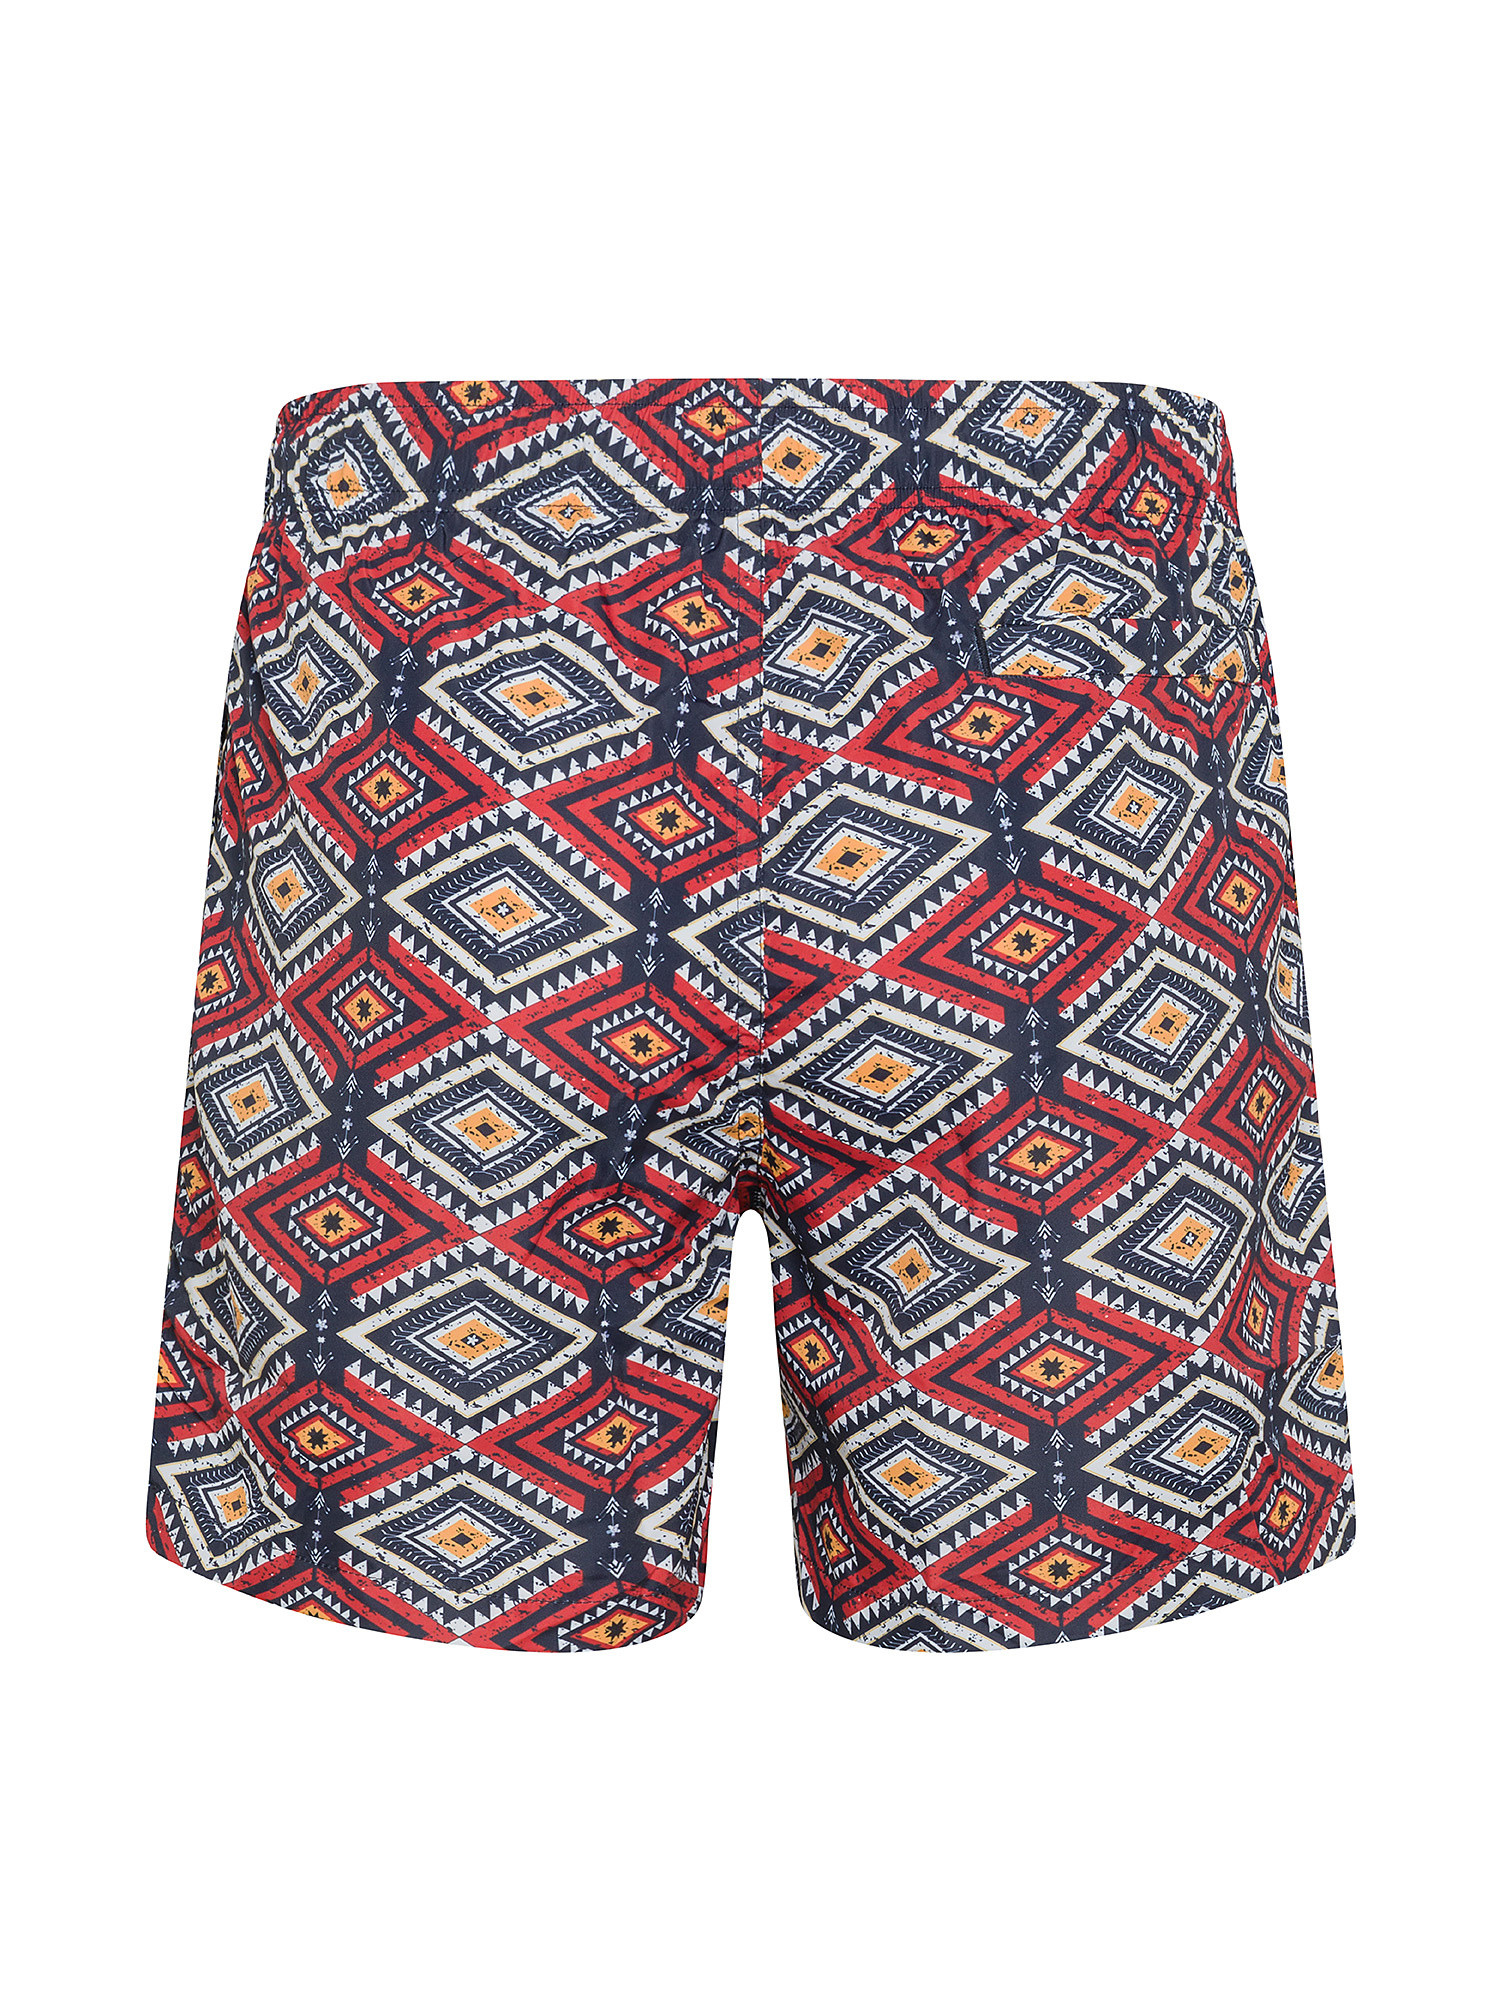 F**K - Patterned swim shorts, Multicolor, large image number 1